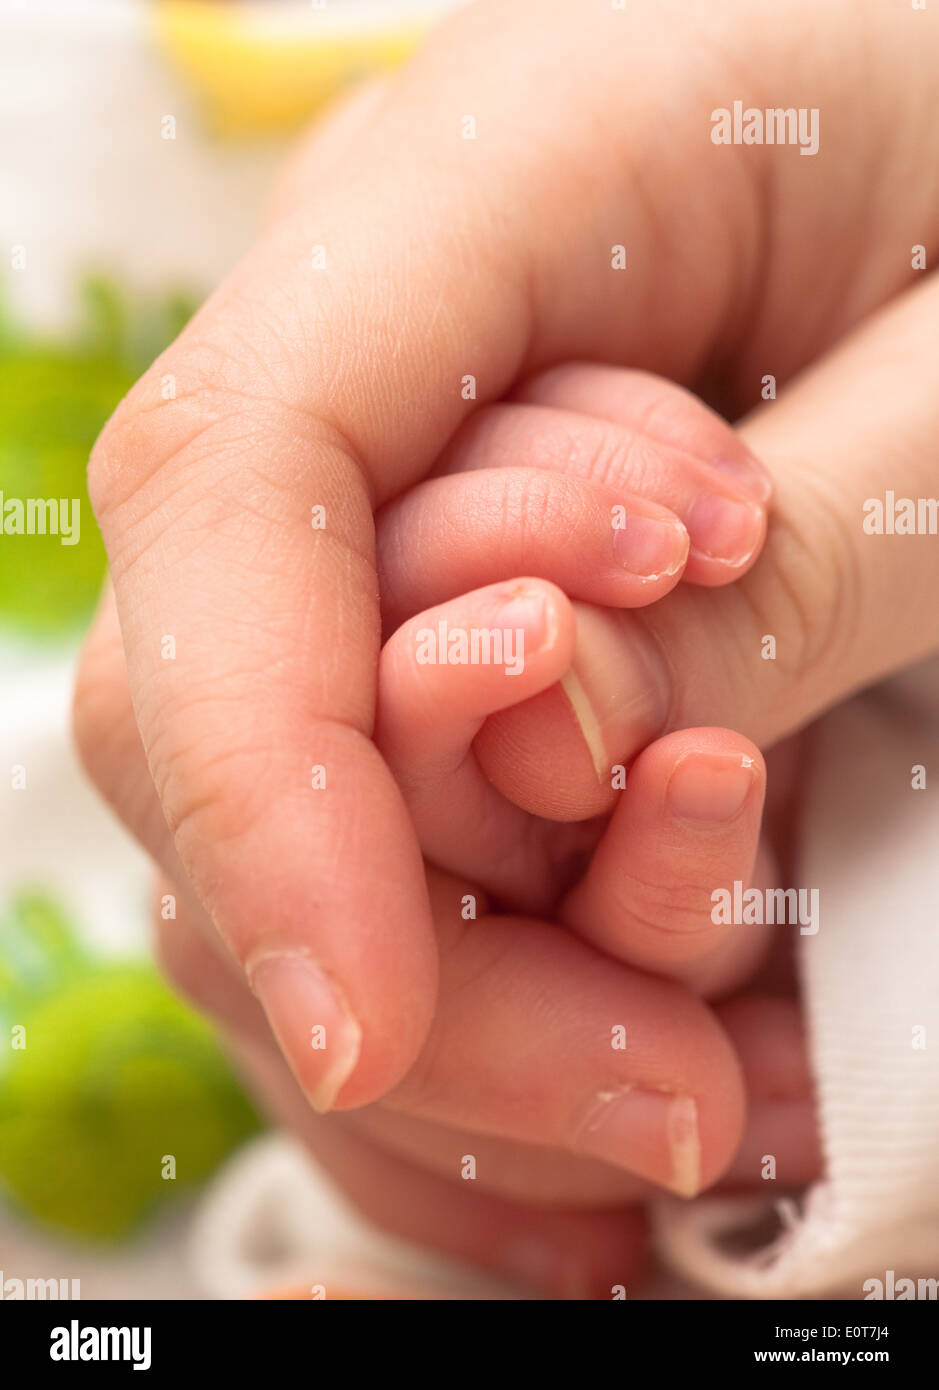 Babyhand umfasst Daumen - baby azienda madre del dito Foto Stock